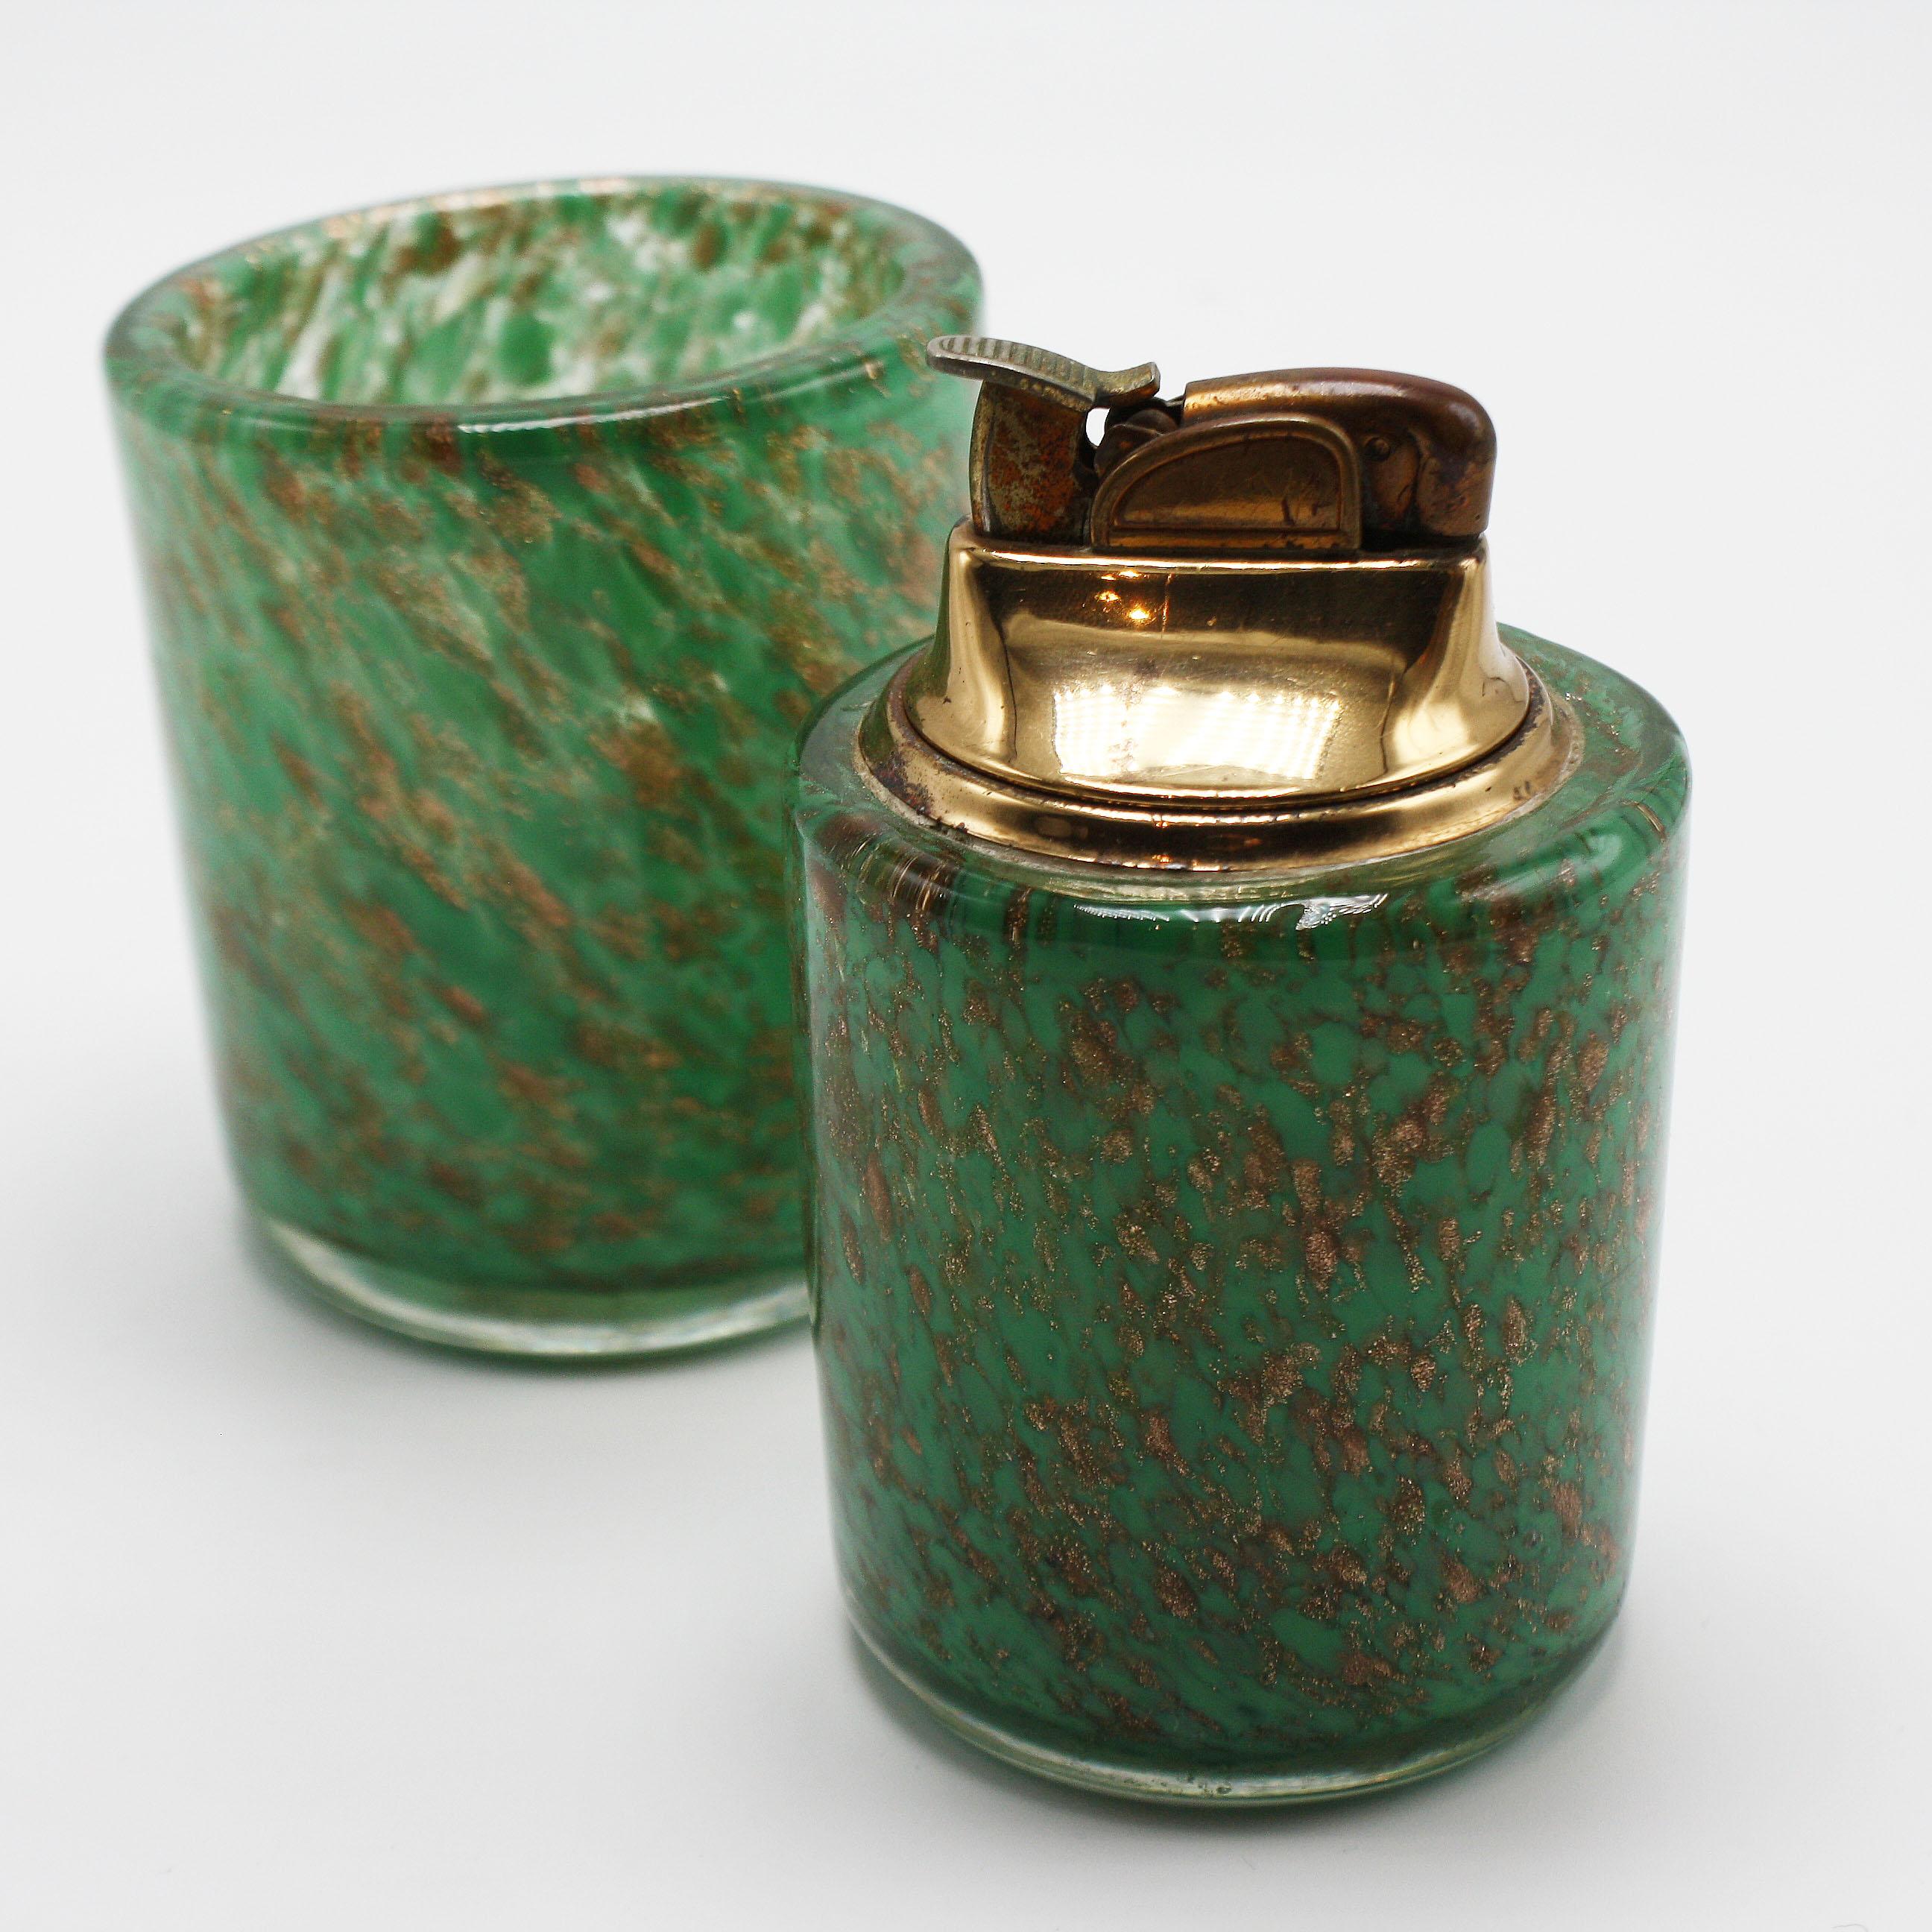 Sage green Murano glass lighter & holder, circa 1960.
$425

Lighter: 2 1/4”D X 3 3/4”H

Holder: 2 5/8”D X 3”H